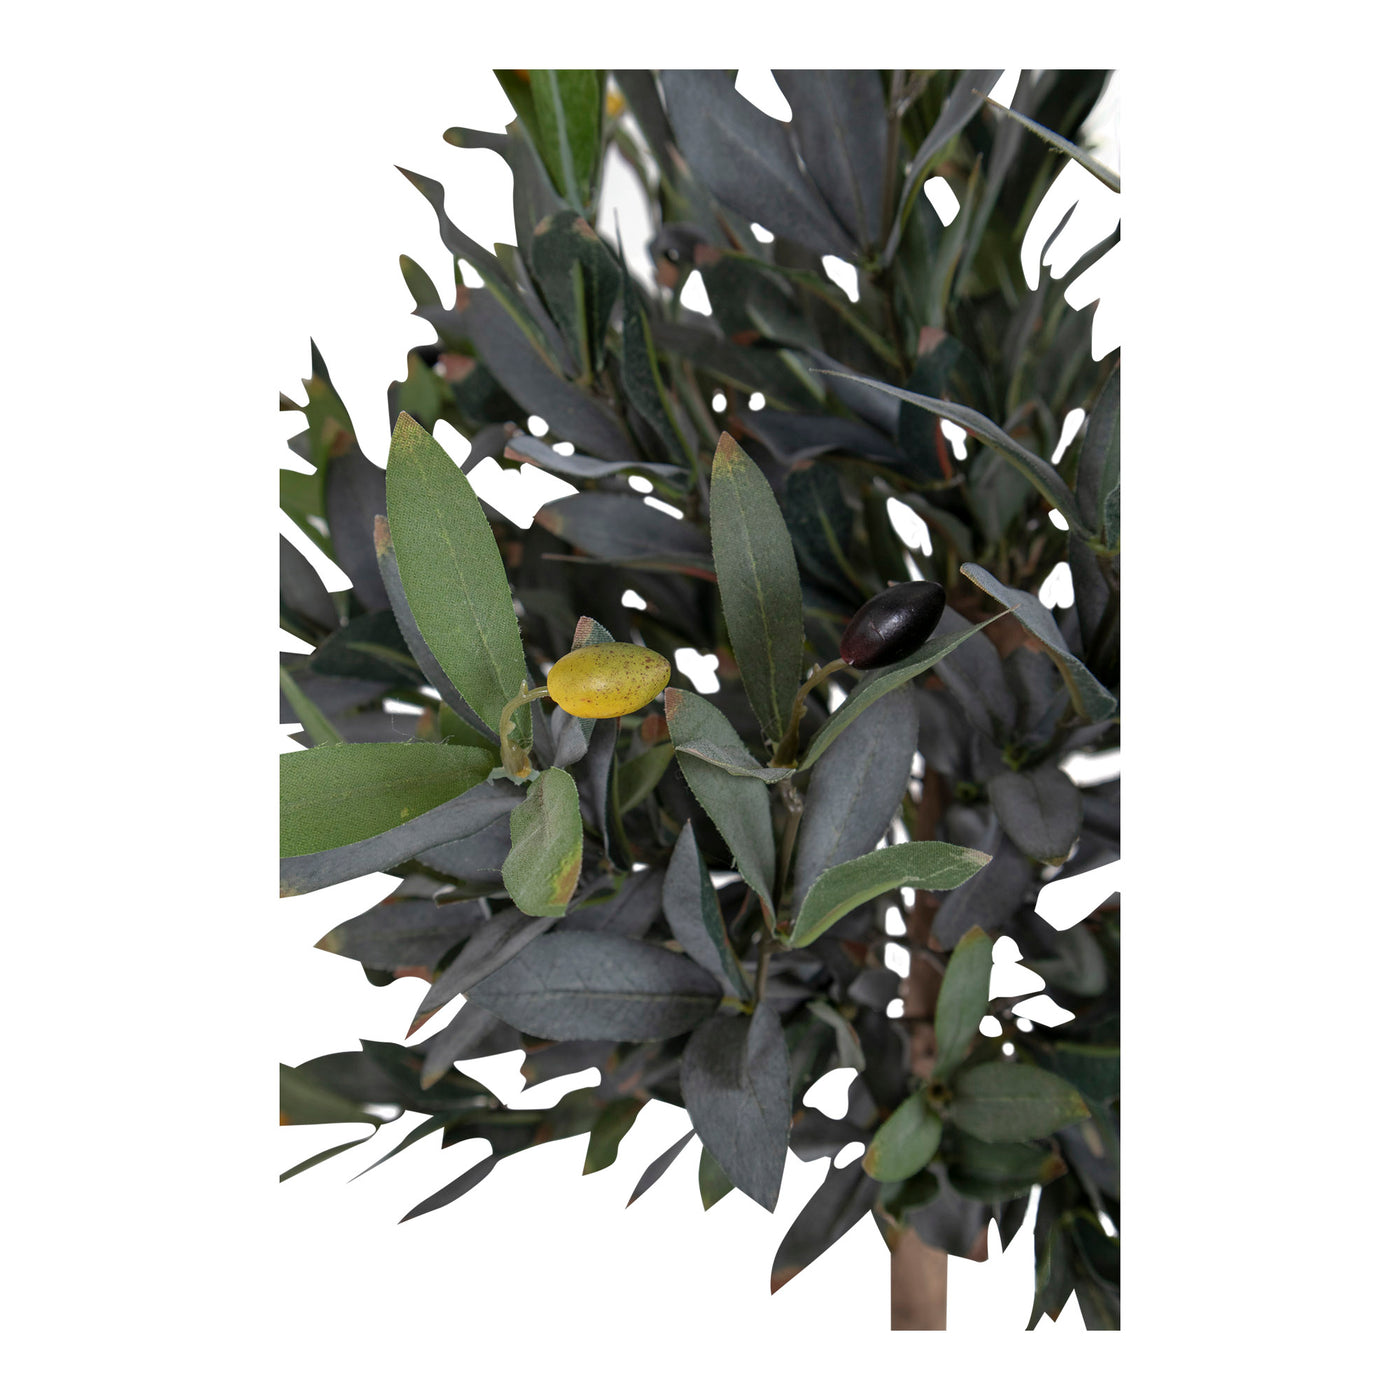 Oliivipuu tekokasvi, 120 cm - Mööpeli.com